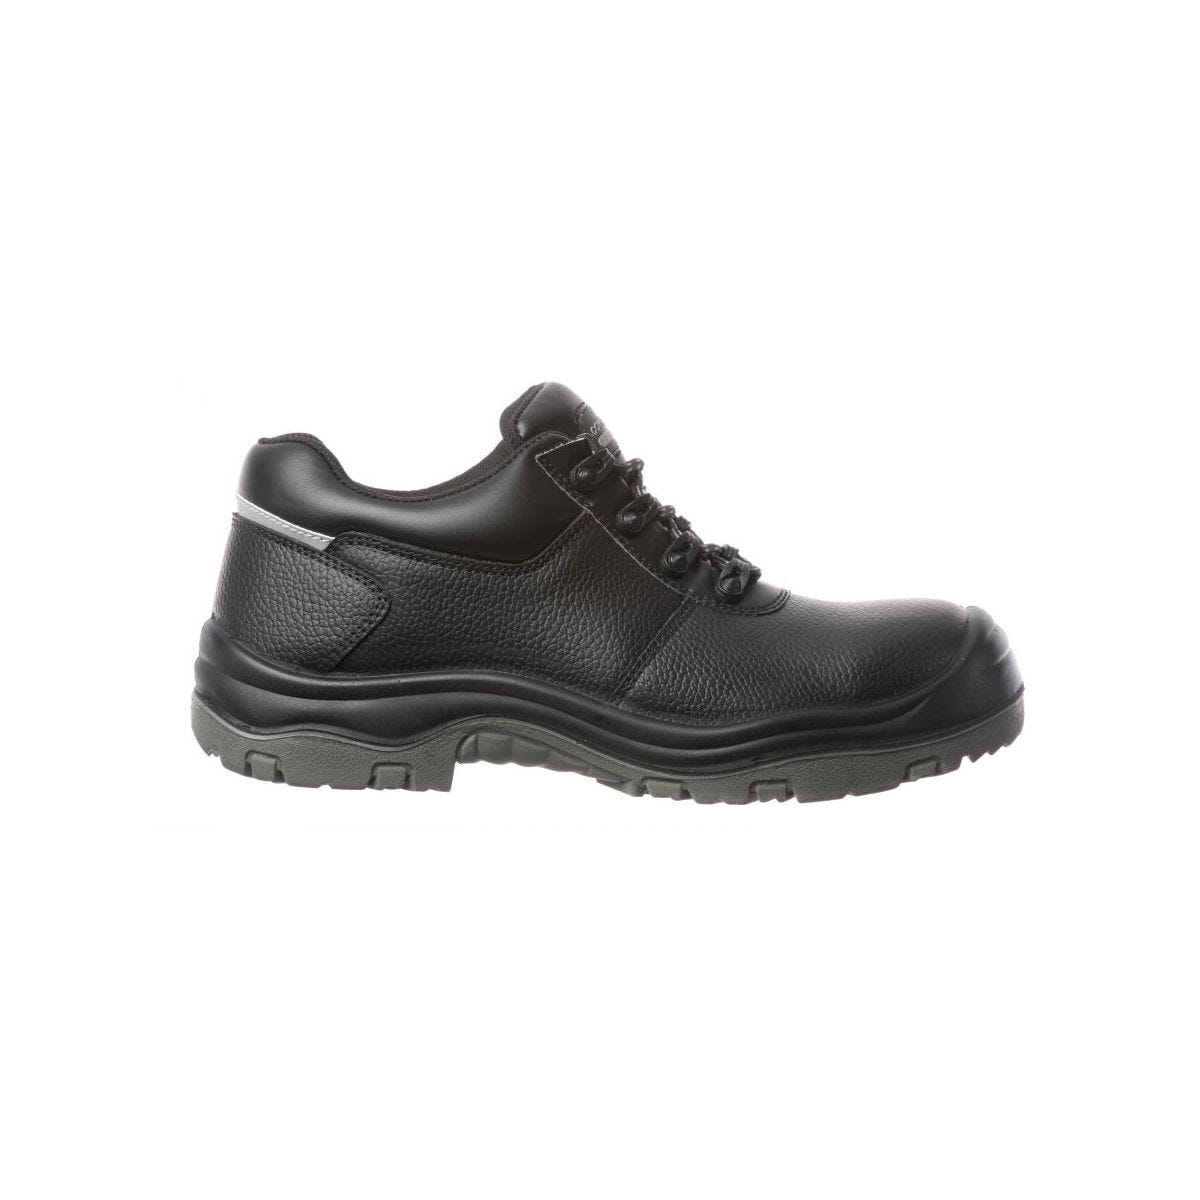 Chaussures de sécurité basses FREEDITE S3 SRC - Coverguard - Taille 46 1